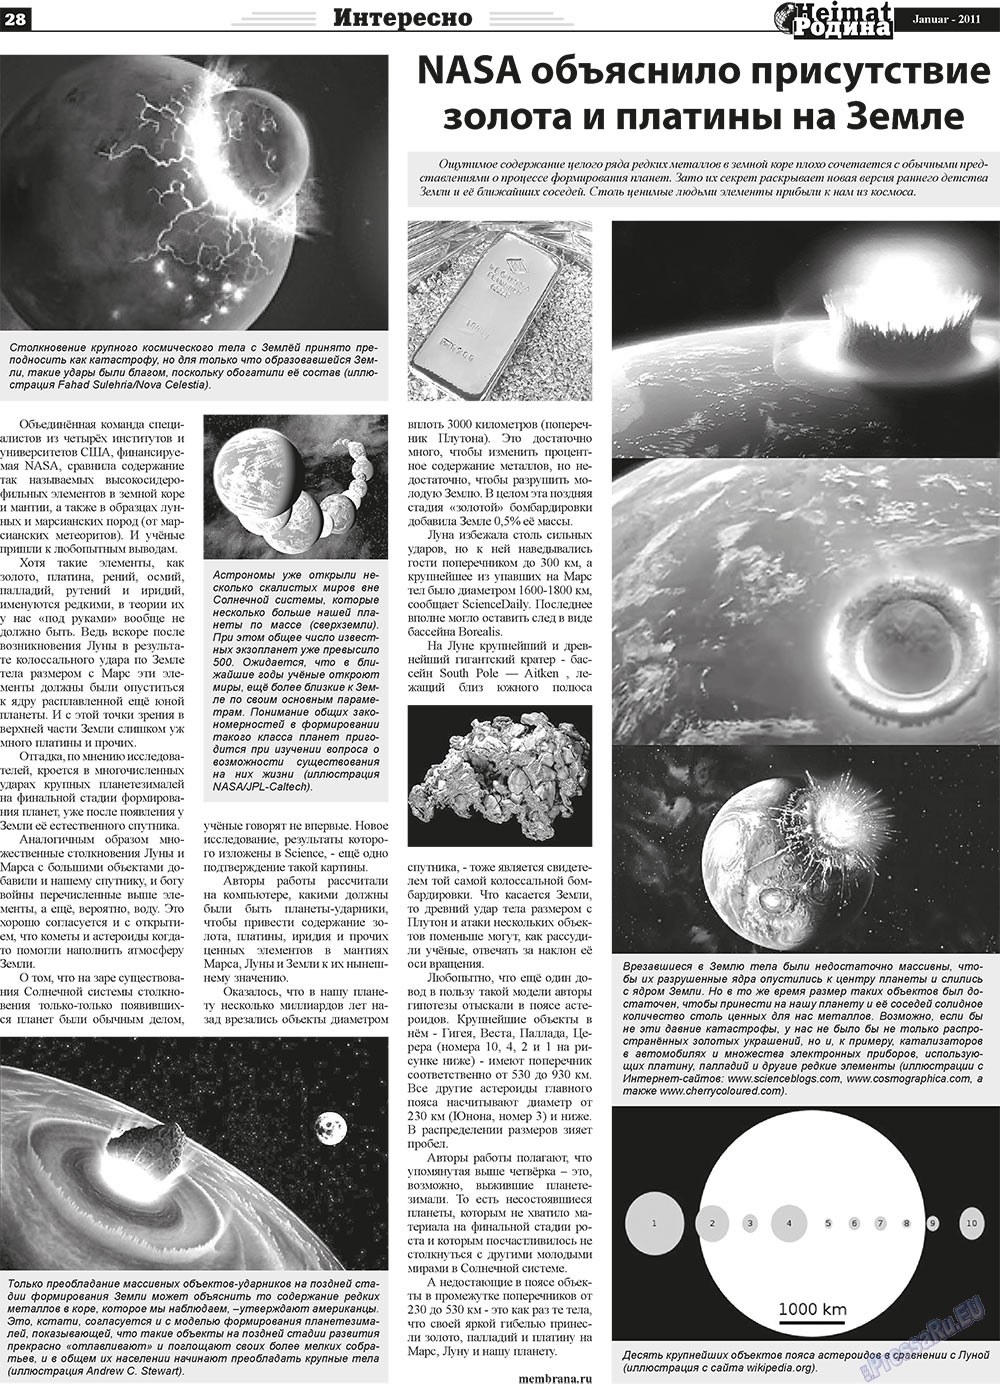 Heimat-Родина (газета). 2011 год, номер 1, стр. 28